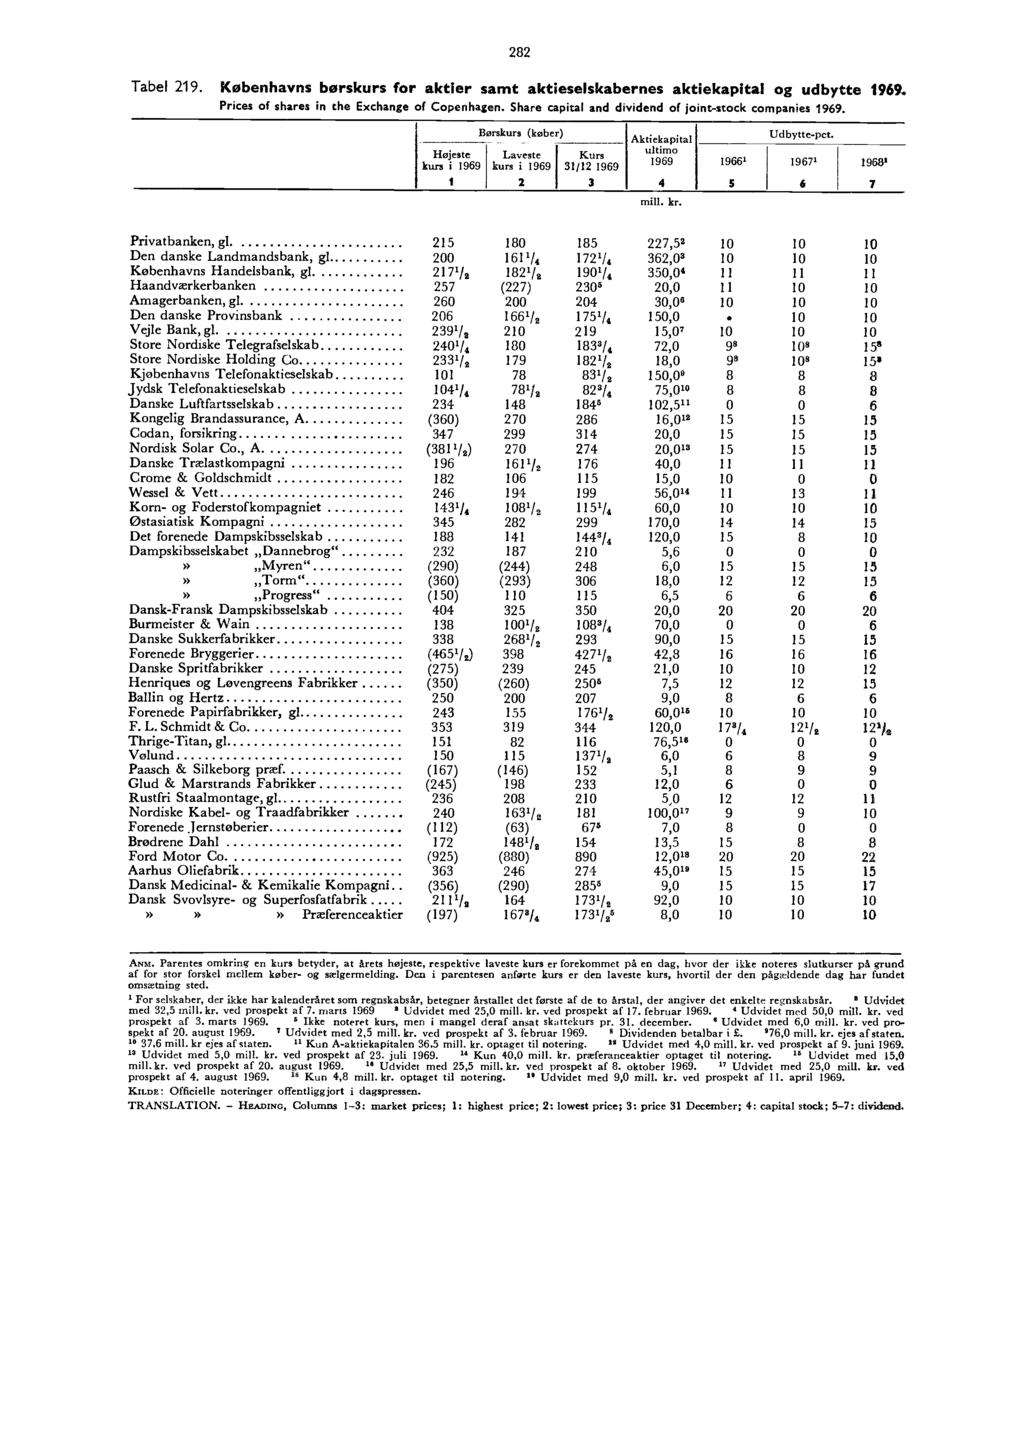 ,Progress.. 282 Tabel 219. Københavns børskurs for aktier samt aktieselskabernes aktiekapital og udbytte 1969. Prices of shares in the Exchange of Copenhagen.